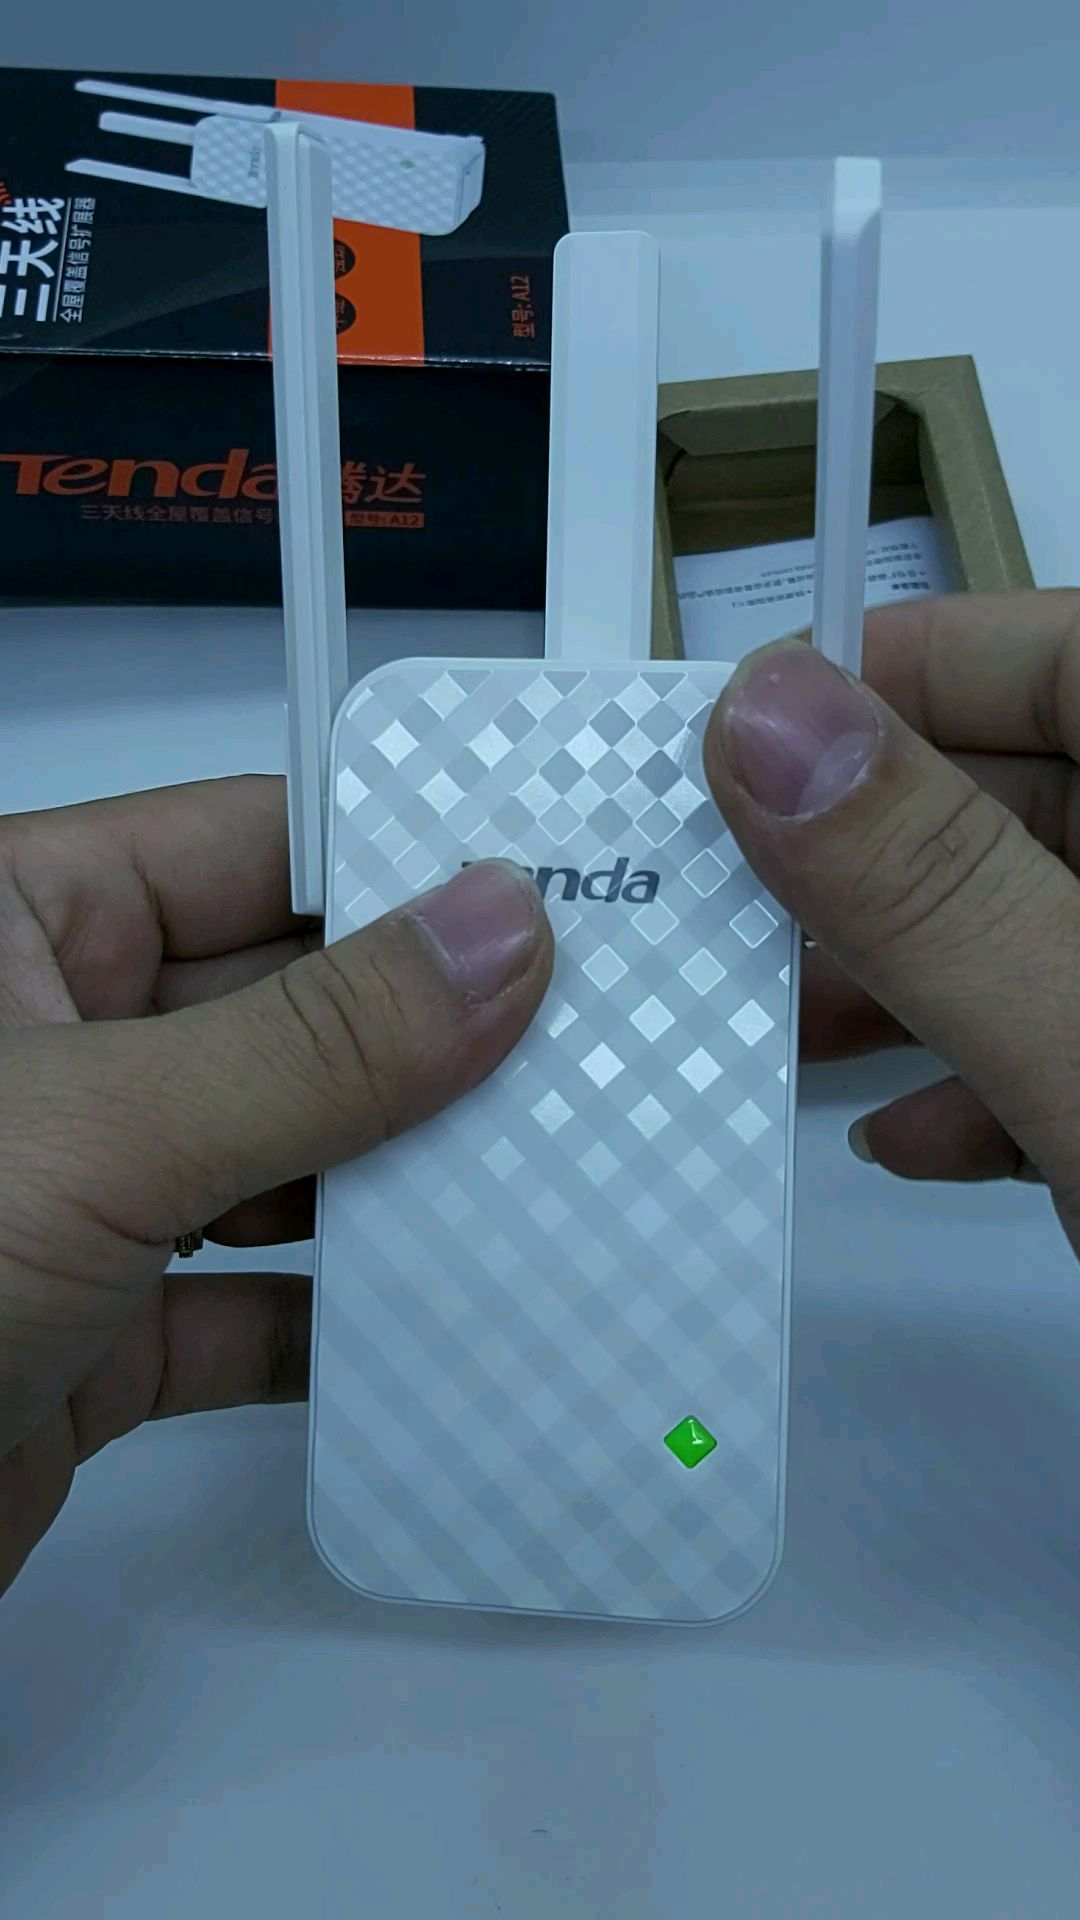 Bộ kích sóng wifi Tenda 3 râu-Hãng thiết bị mạng danh tiếng thế giới-thiết bị mở rộng sóng | BigBuy360 - bigbuy360.vn